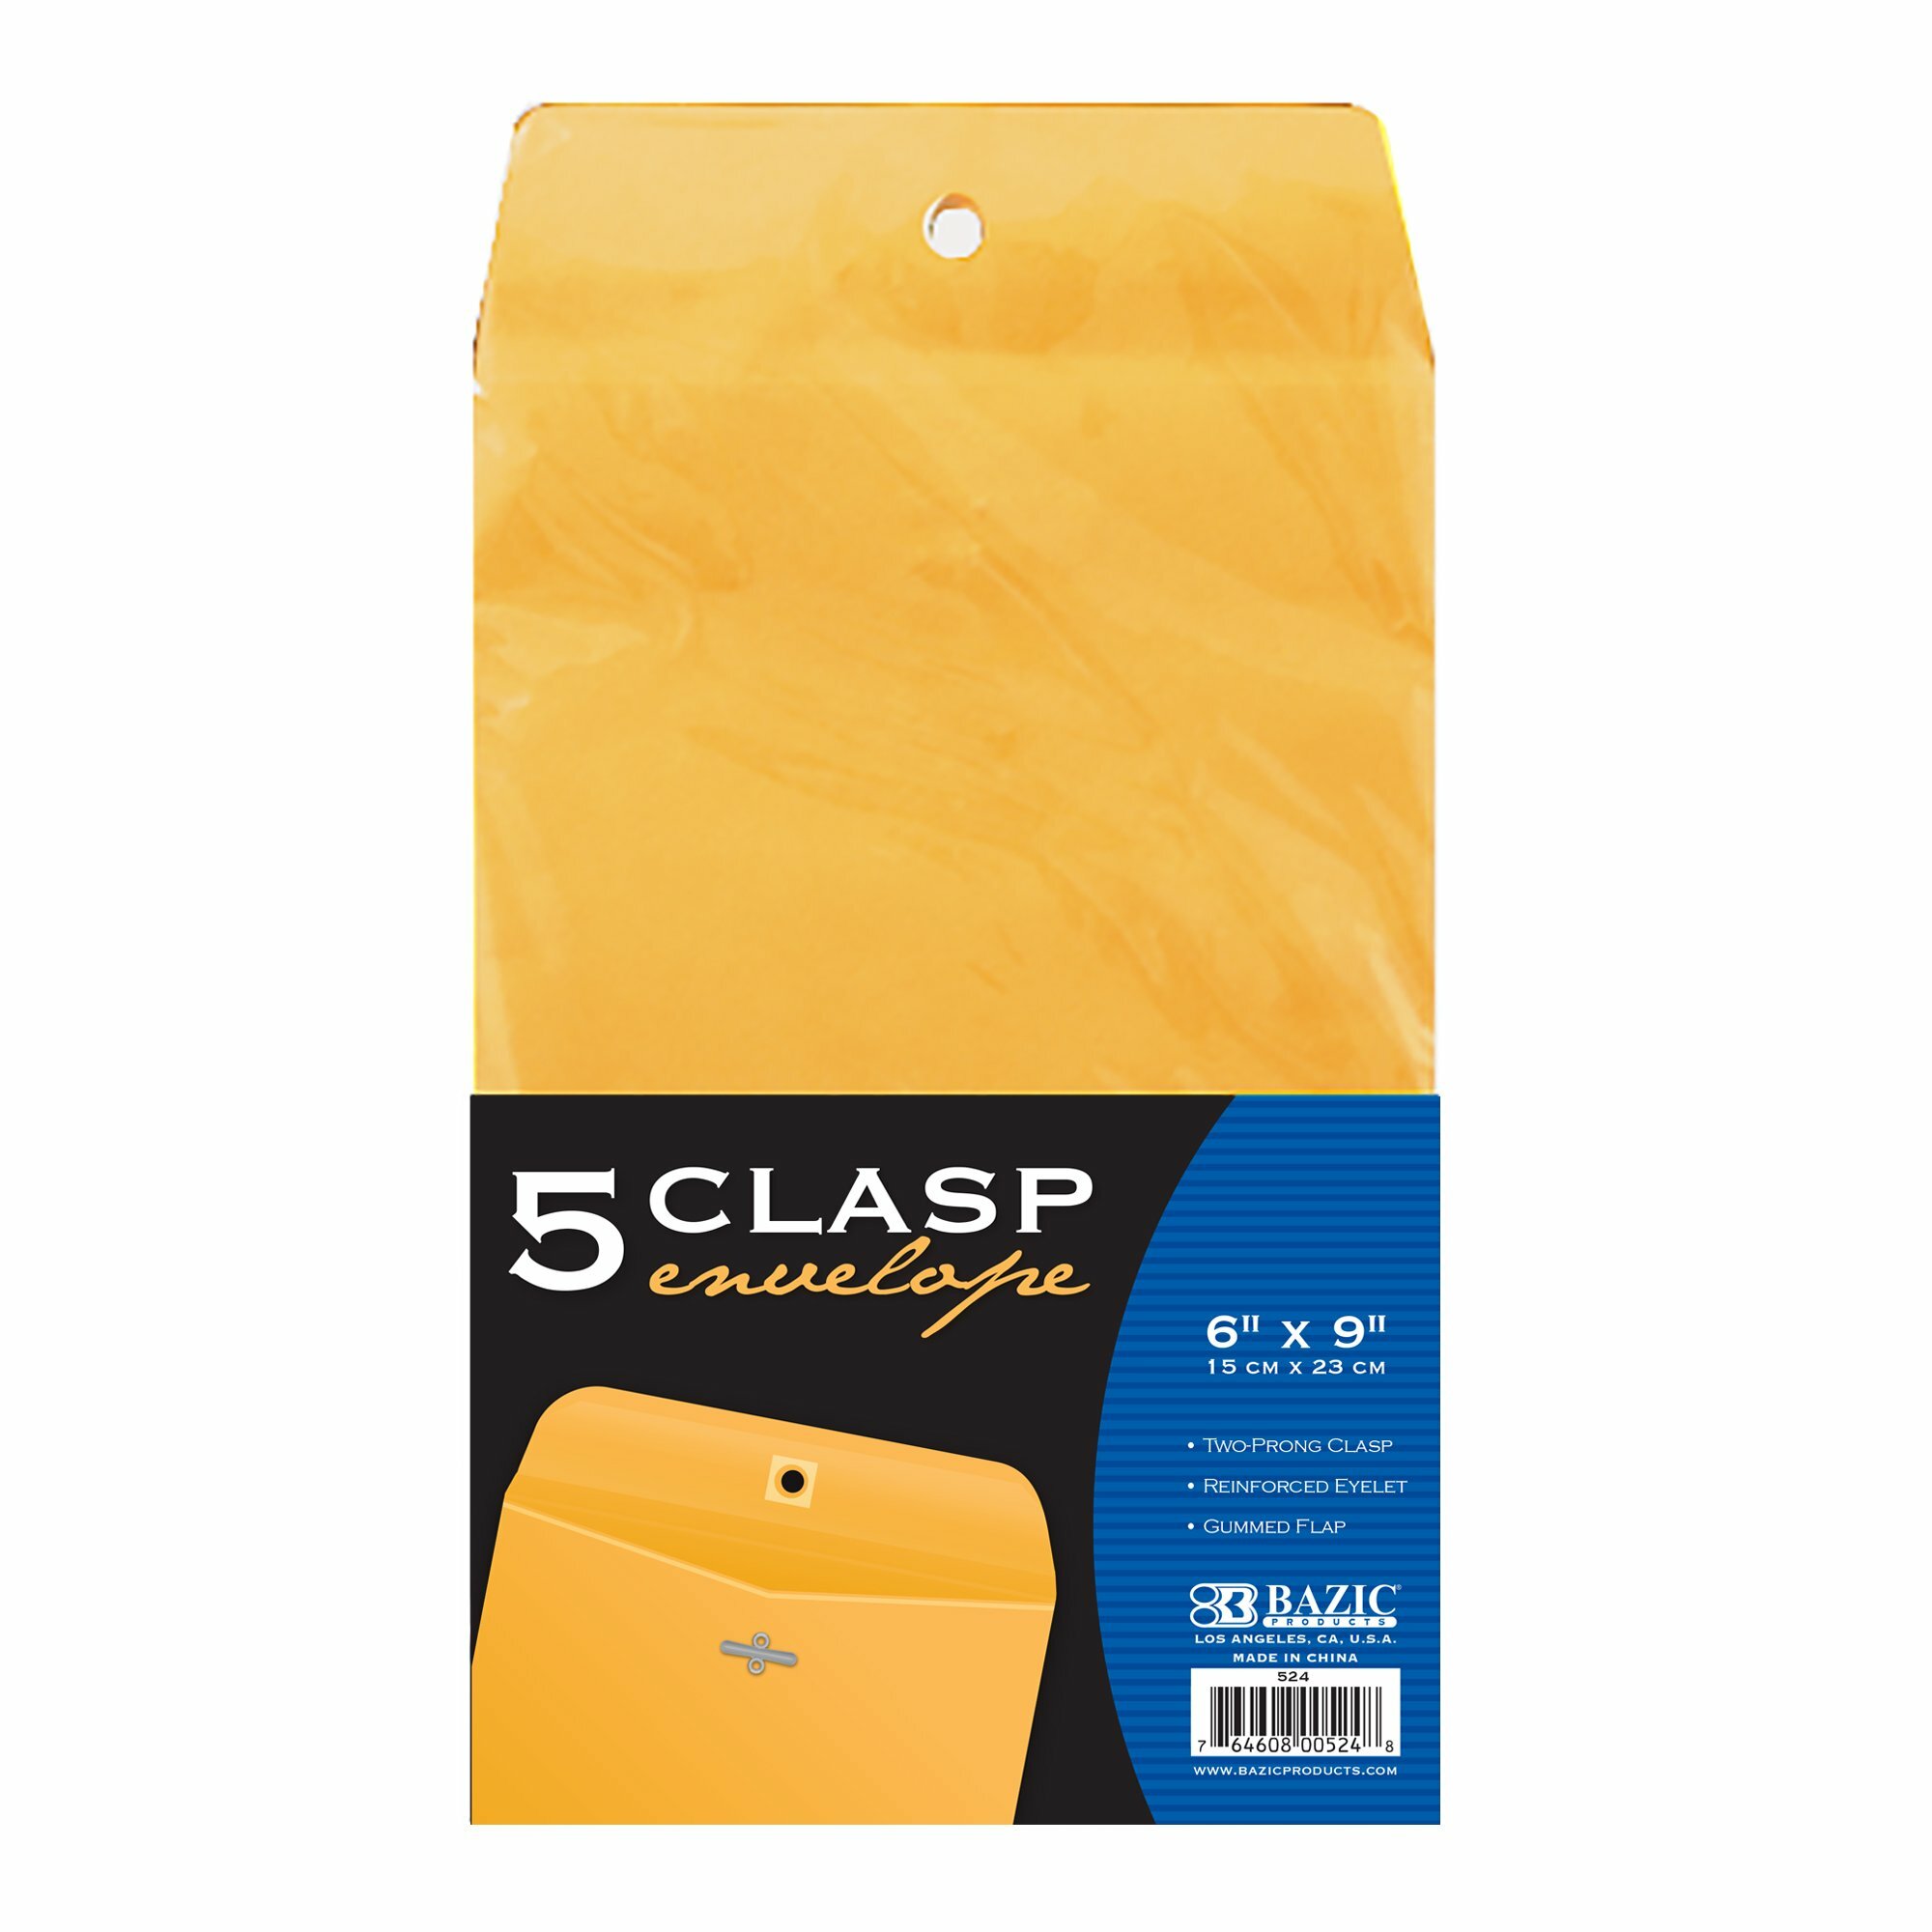 Clasp Envelope Bazic 6x9/5Pk (524)